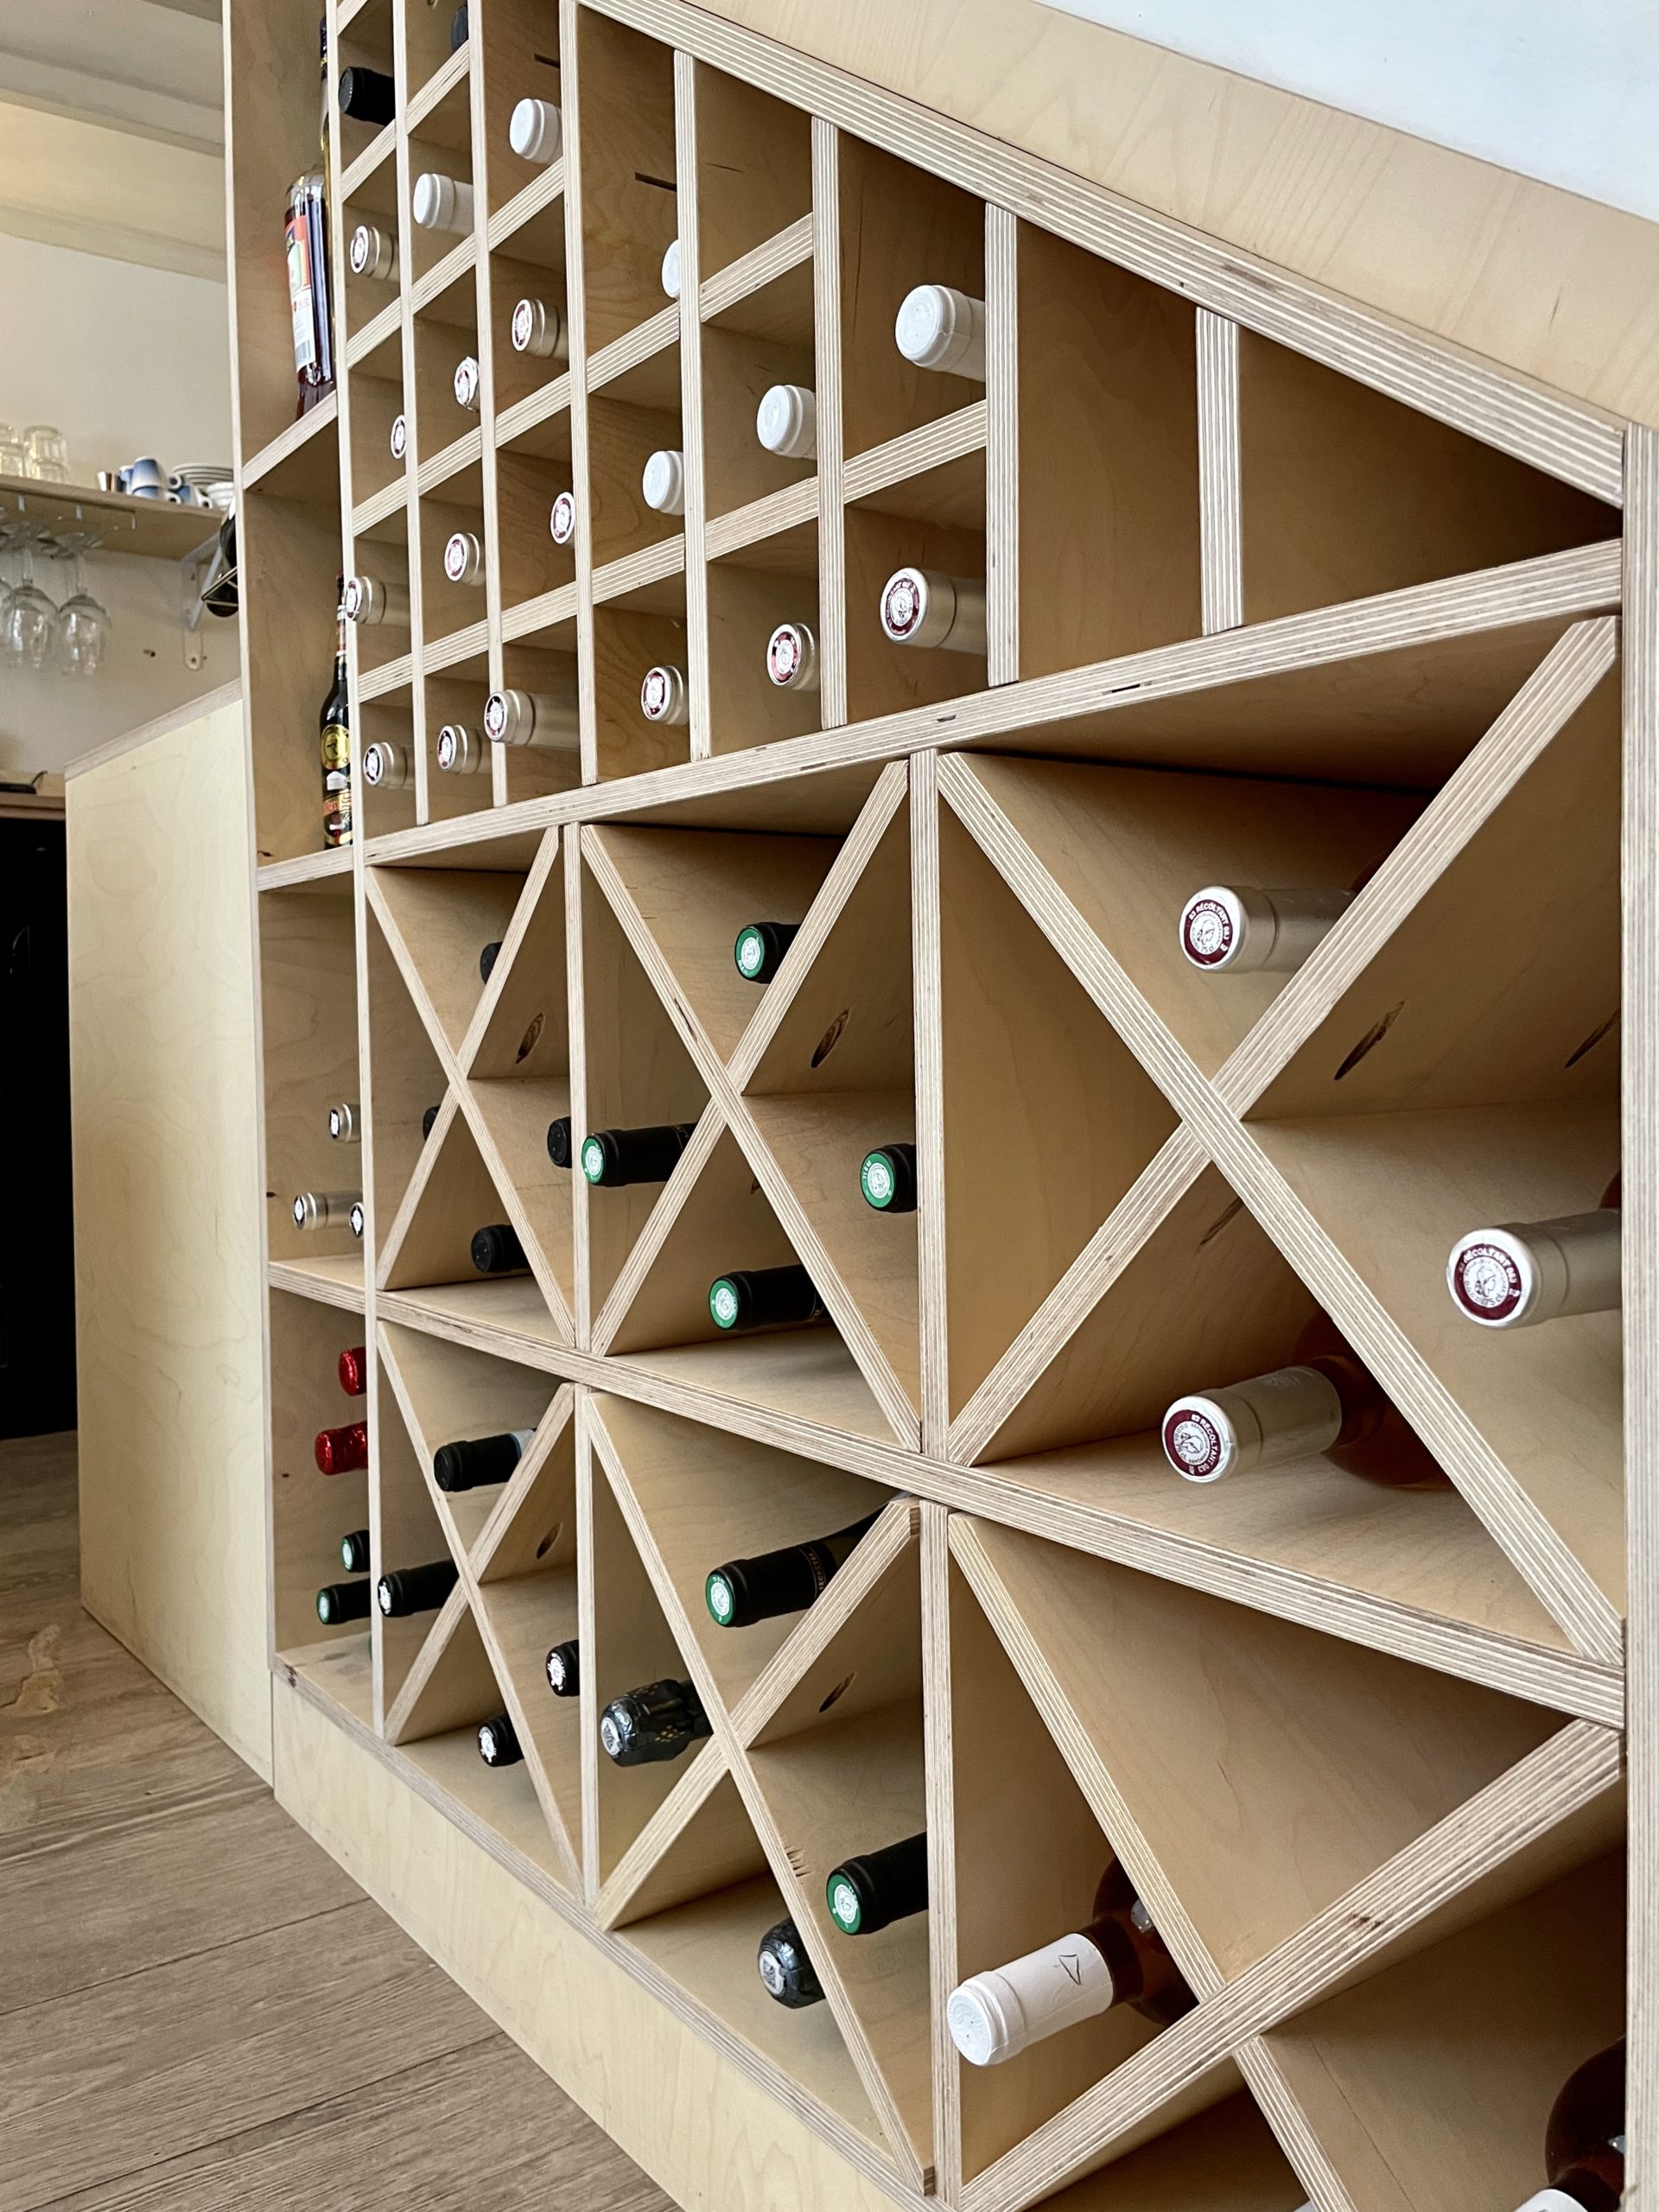 Agencement sur mesure de casier à vin en bois pour l'optimisation de l'espace de service en intégrant le dessous de l'escalier.